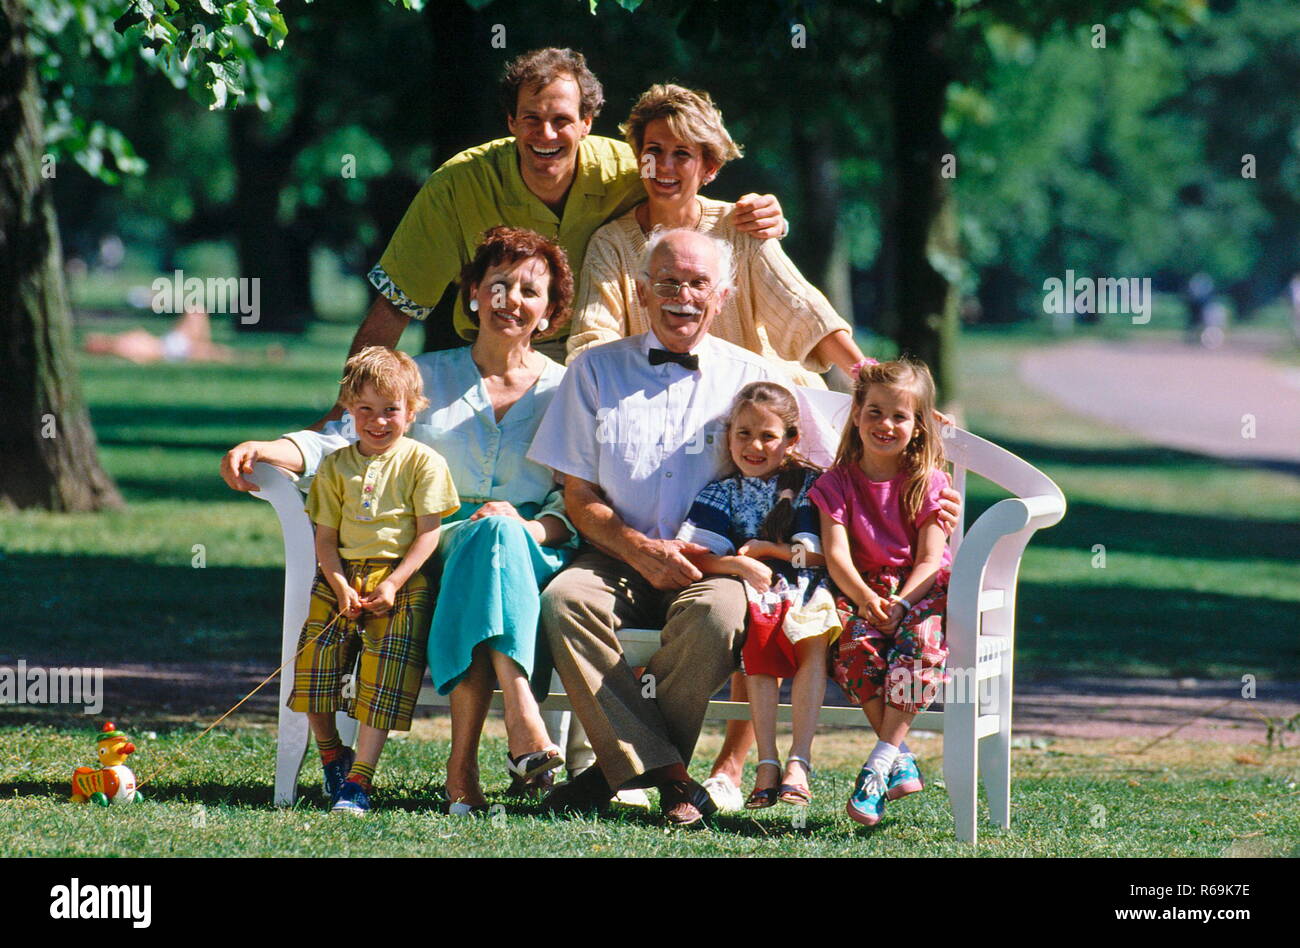 Ritratto, Familie sitzt auf einer Bank im Park, 7 Personen, 3 Generationen, Eltern, Grosseltern und 3 Kinder, 2 Maedchen, 1 Junge Foto Stock